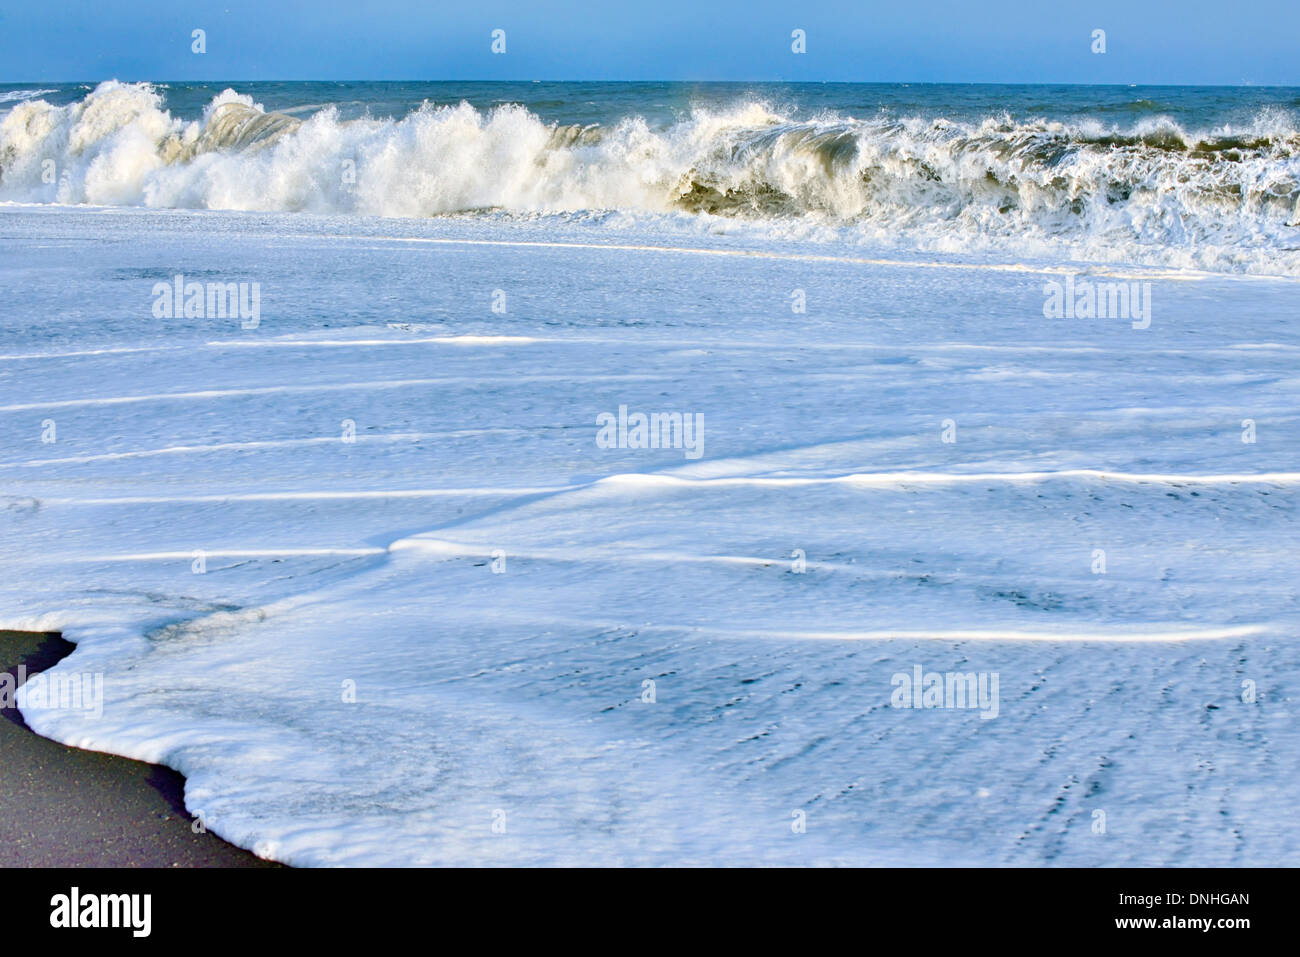 Big waves broken at ocean Stock Photo